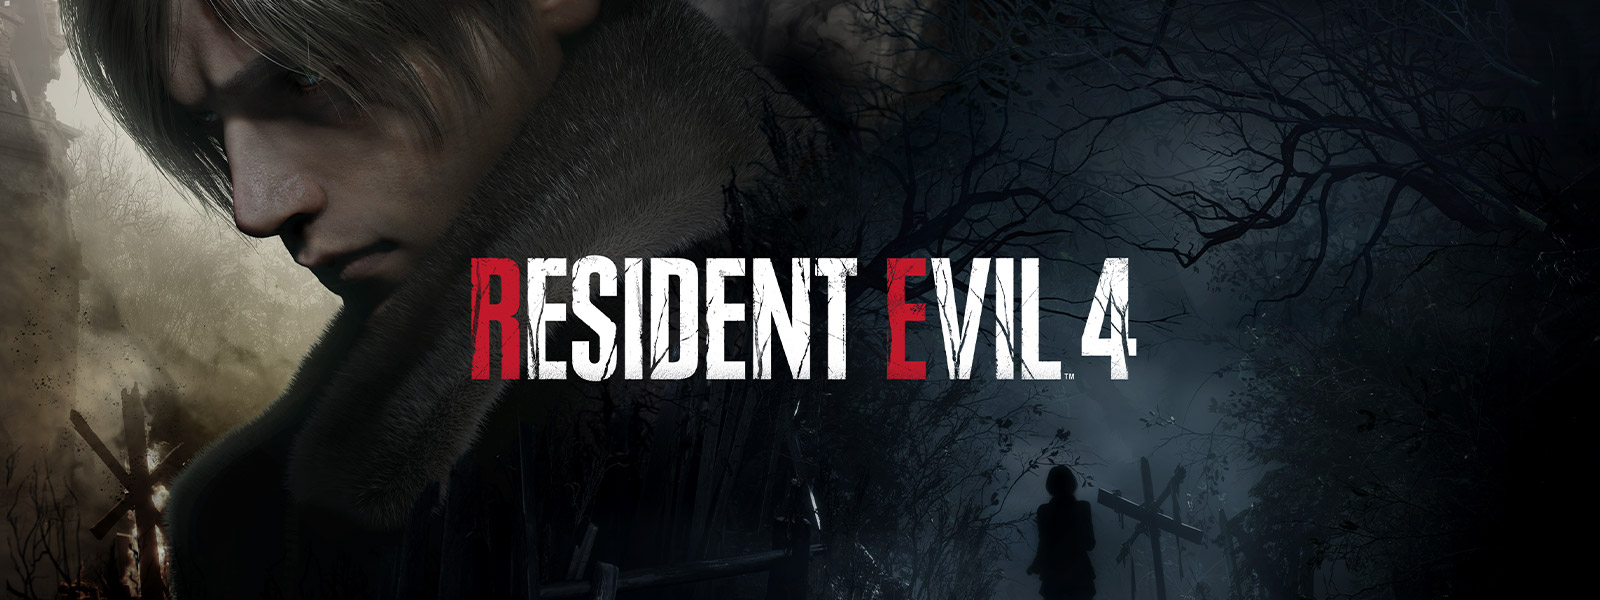 Resident Evil 4. Een man met grijs haar wendt zich plechtig af terwijl een vrouw over een donker, griezelig bospad loopt.